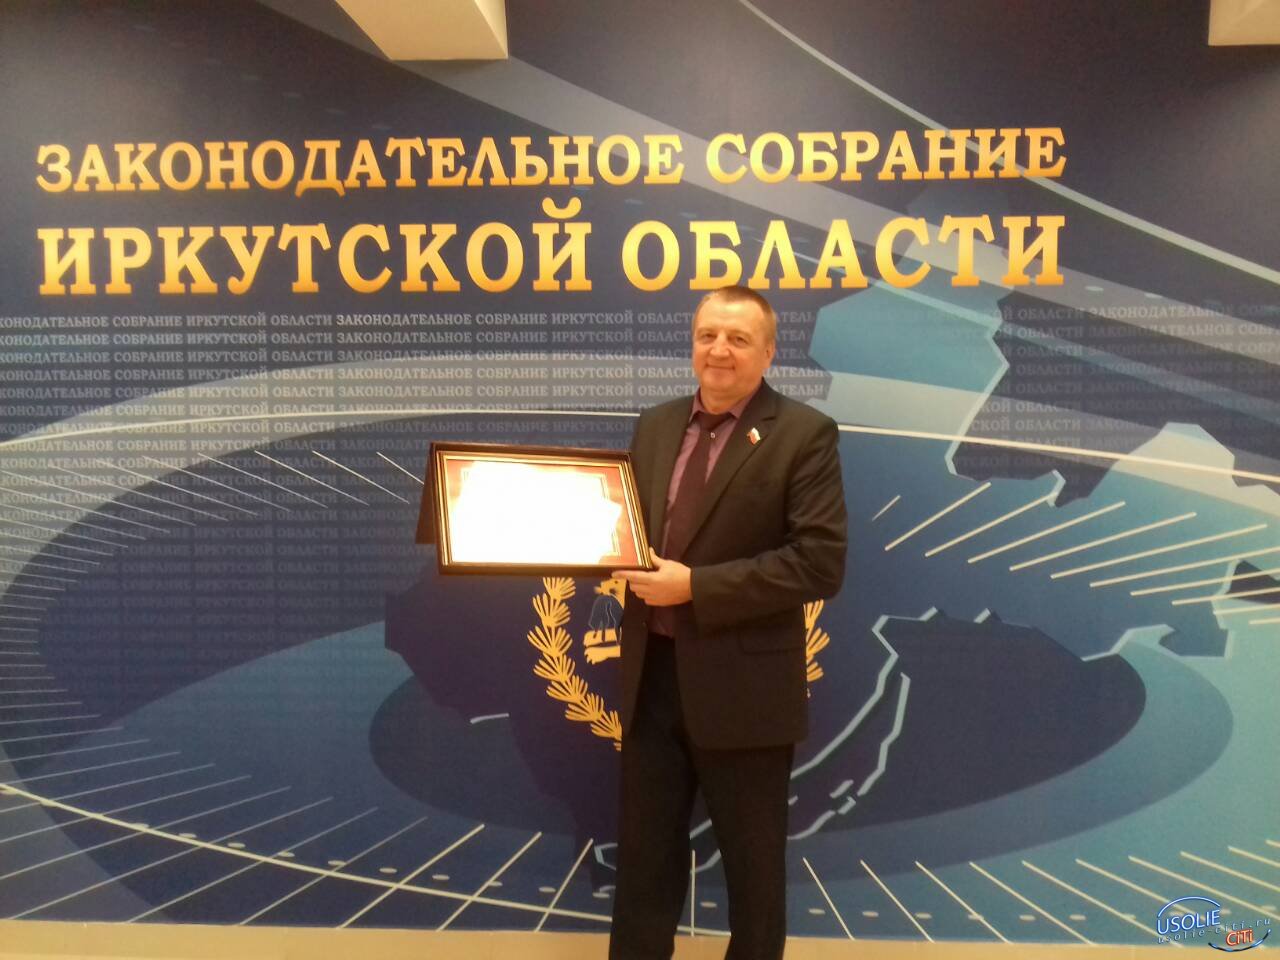 Усольский врач Сергей Прохоров  награжден Почетной грамотой  Заксобрания